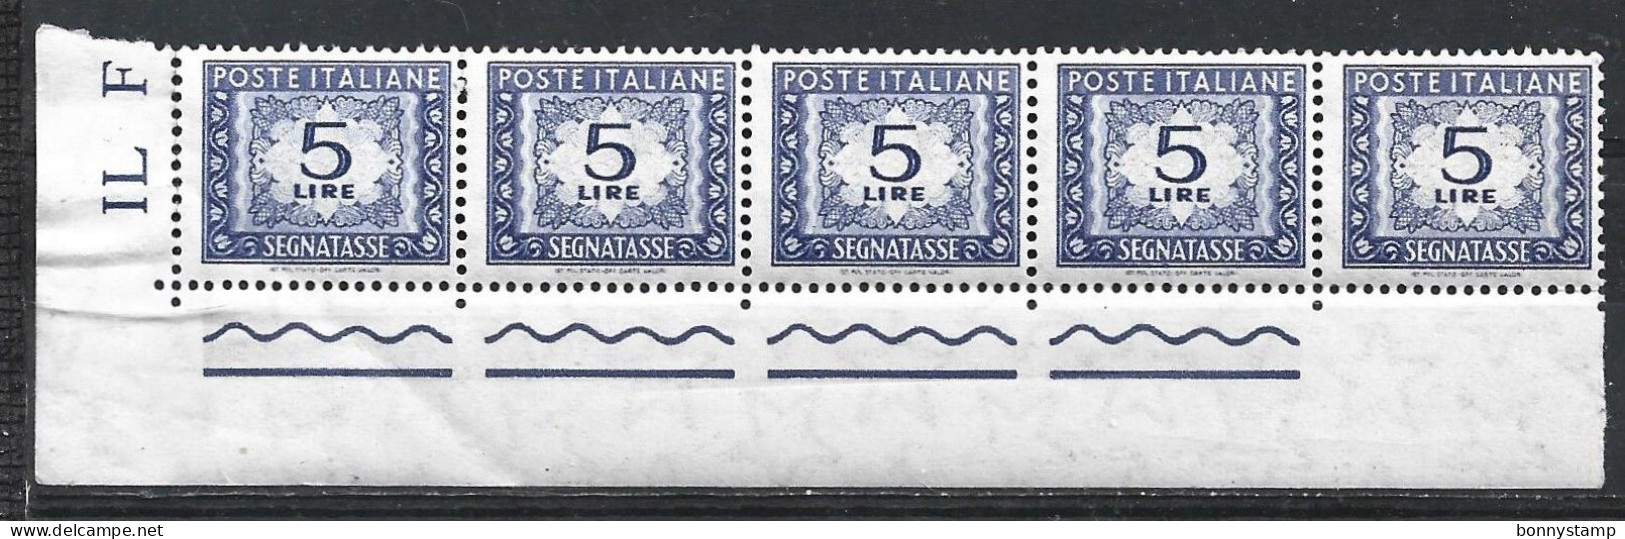 Repubblica Italiana, 1955/66 - 5 Lire Segnatasse, Fil. Stelle, Blocco Di 5 - Nr.111 MNH** - Postage Due